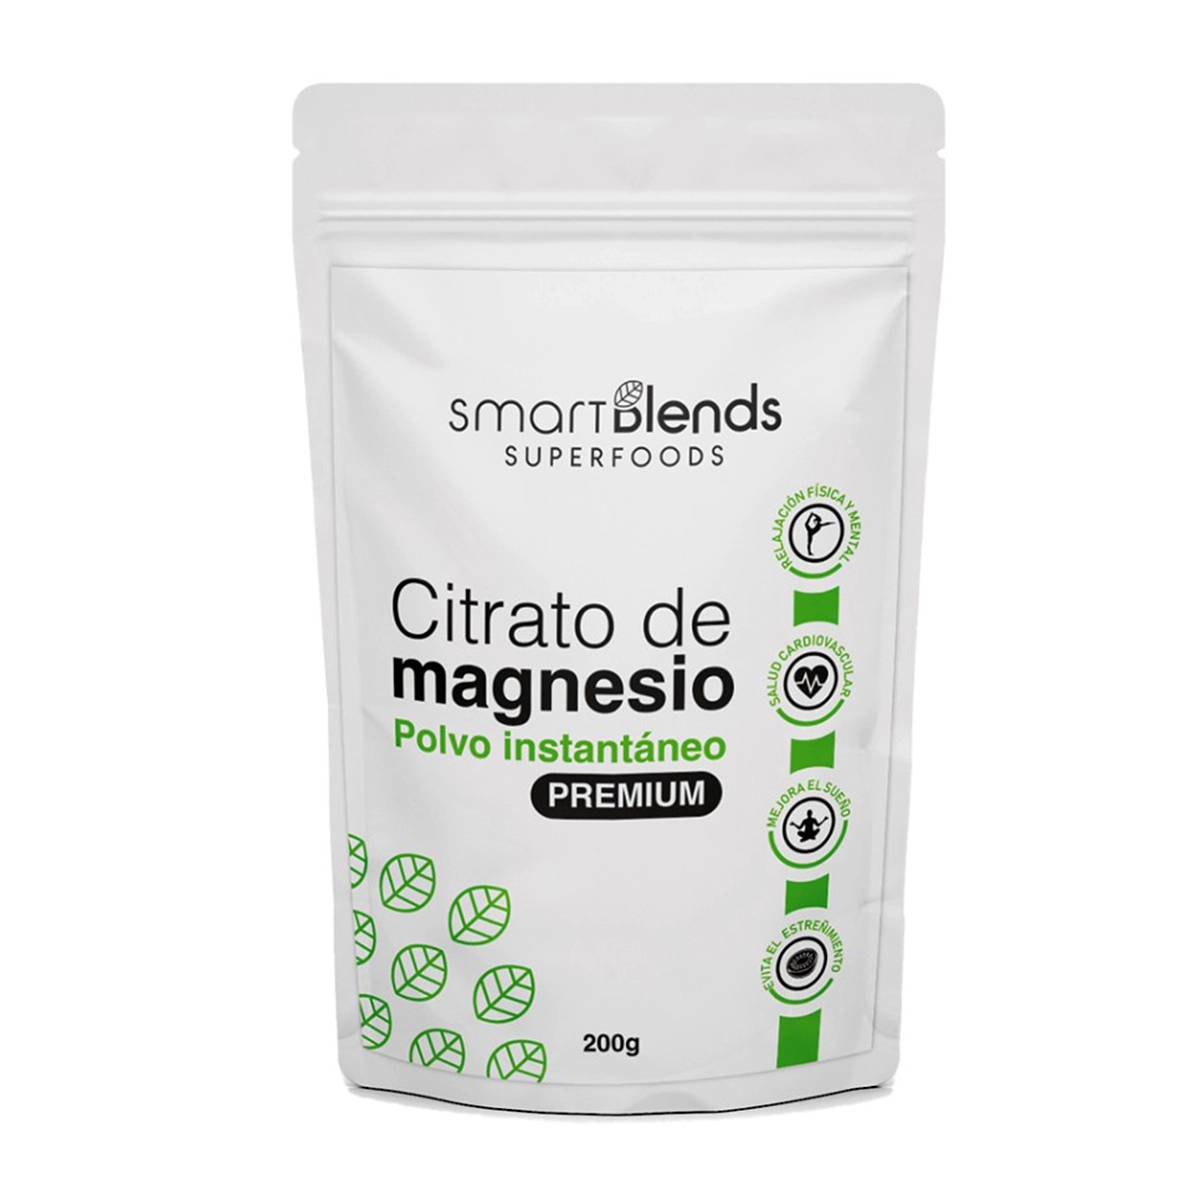 citrato de magnesio premiun 200gr smarth blends